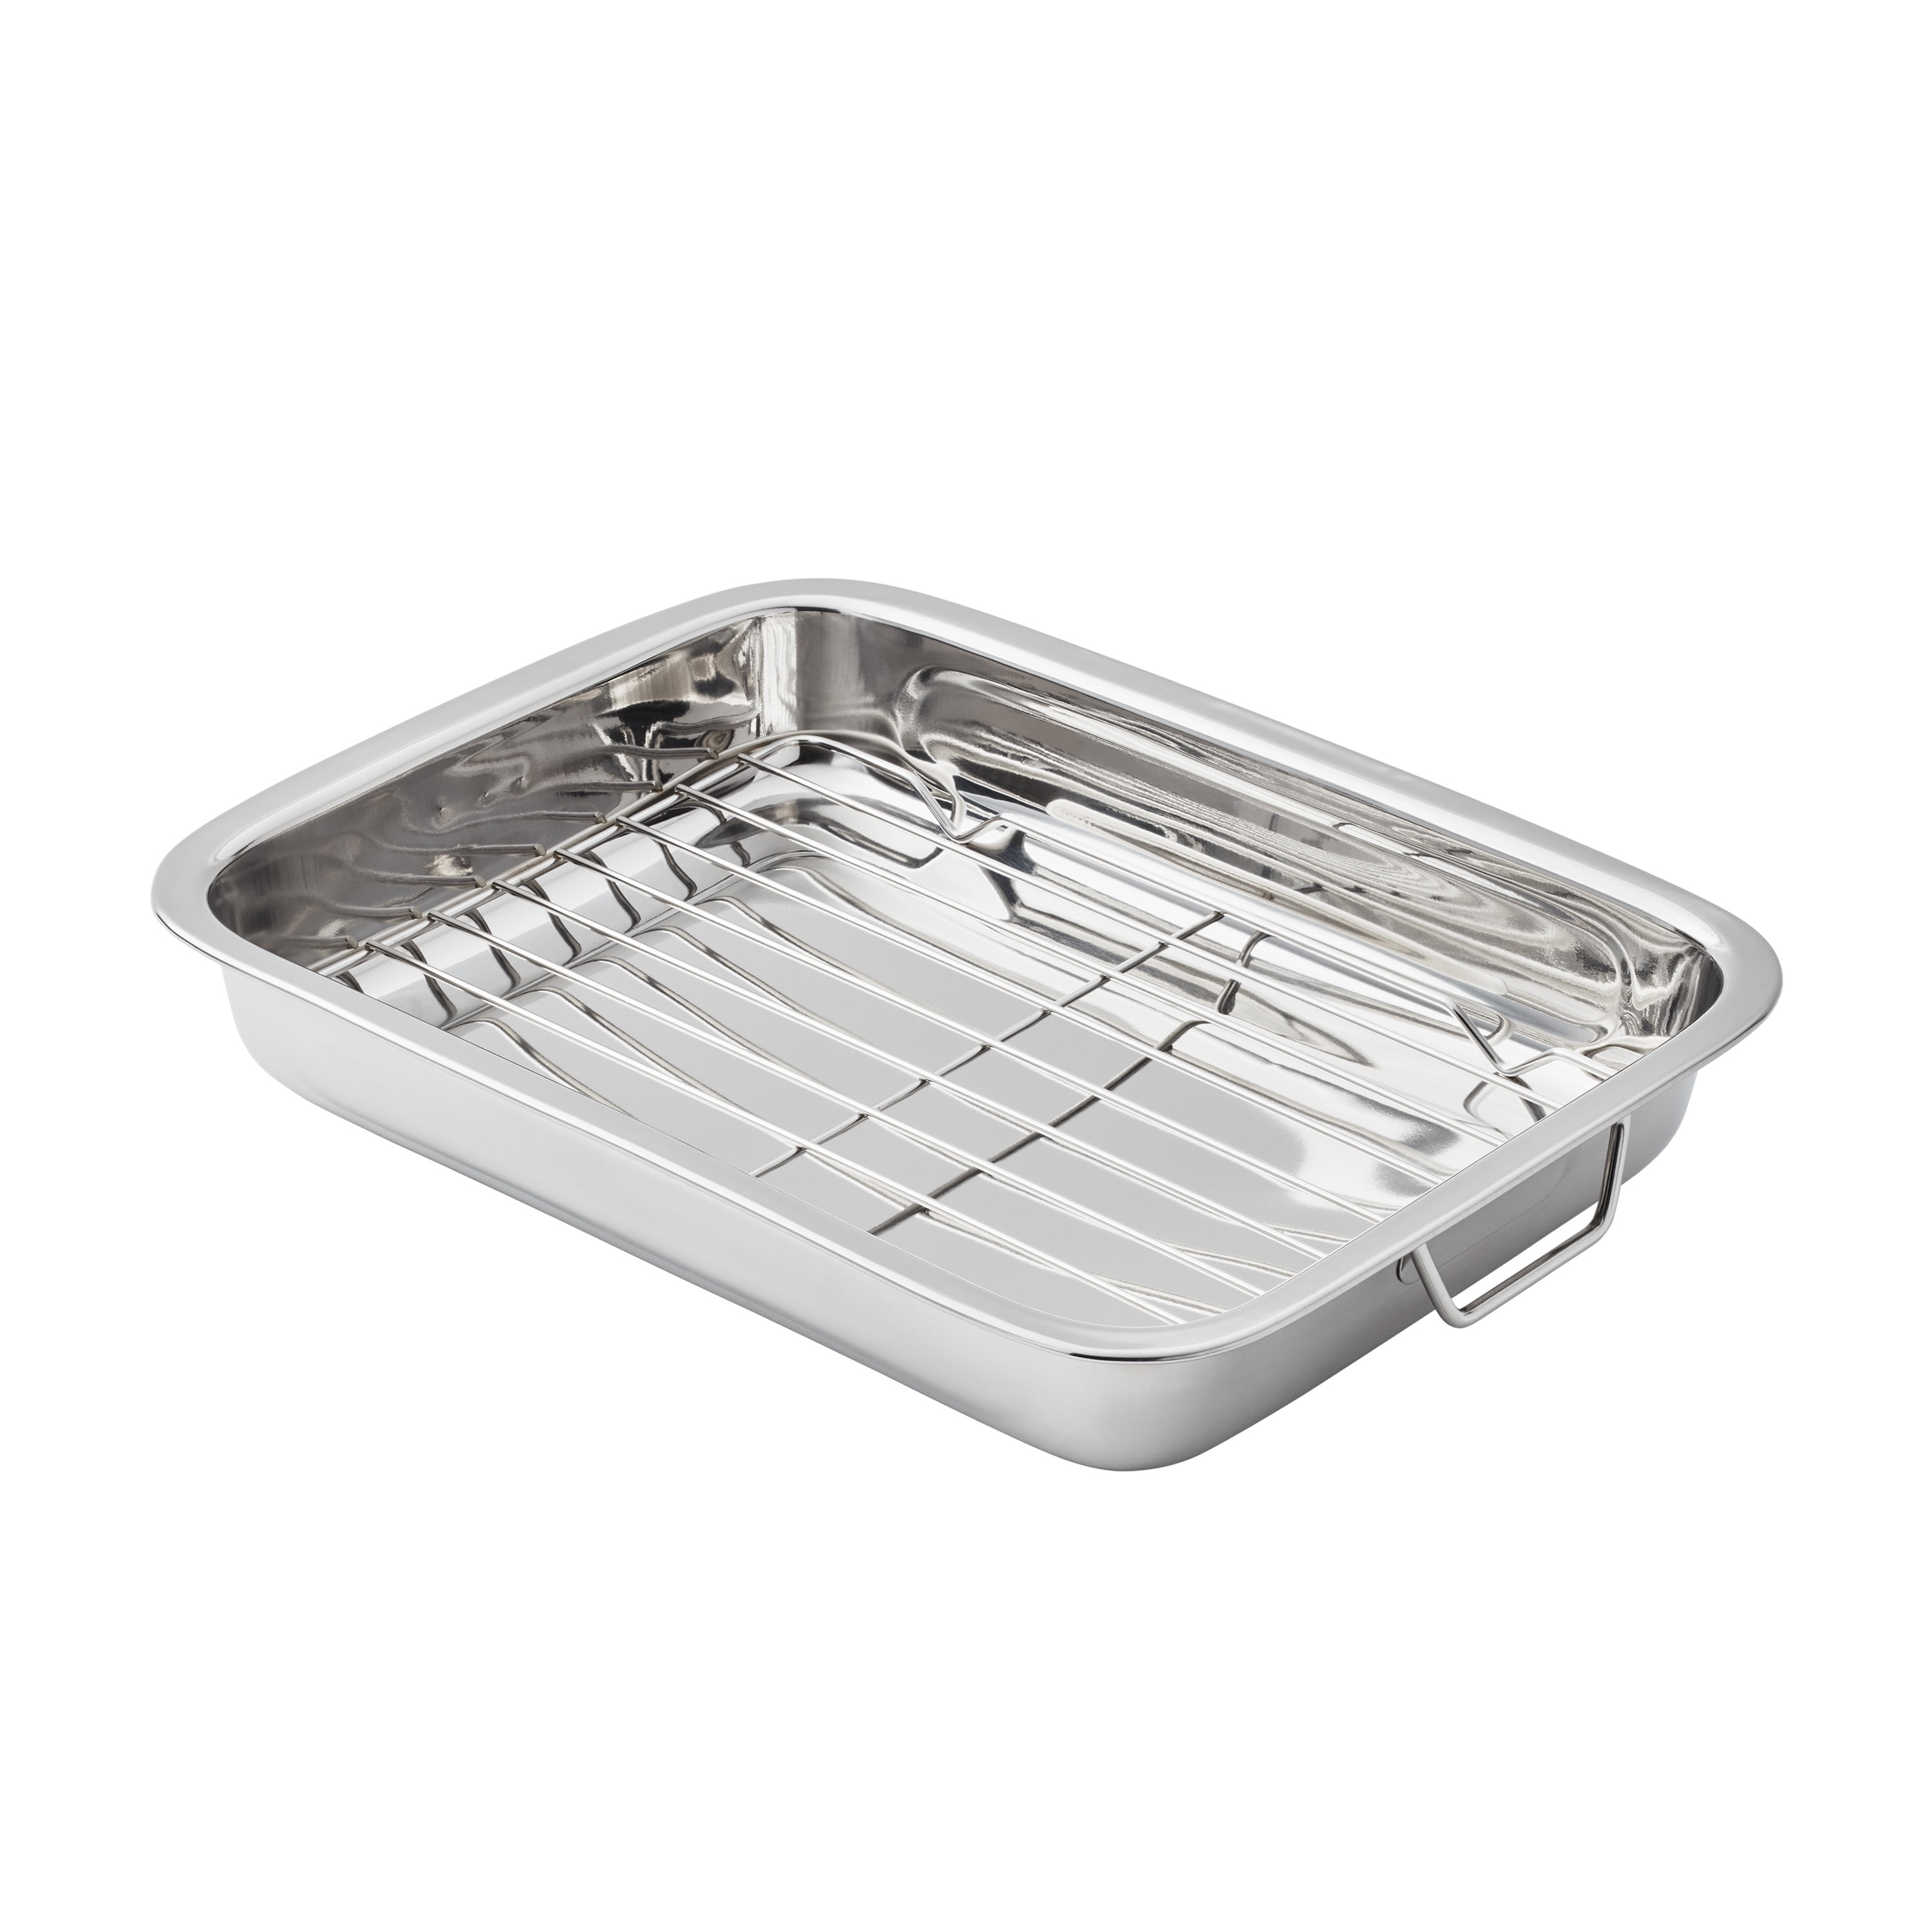 Kitchen Set W/ Lids 24-Piece Stainless Steel Dishwasher Safe